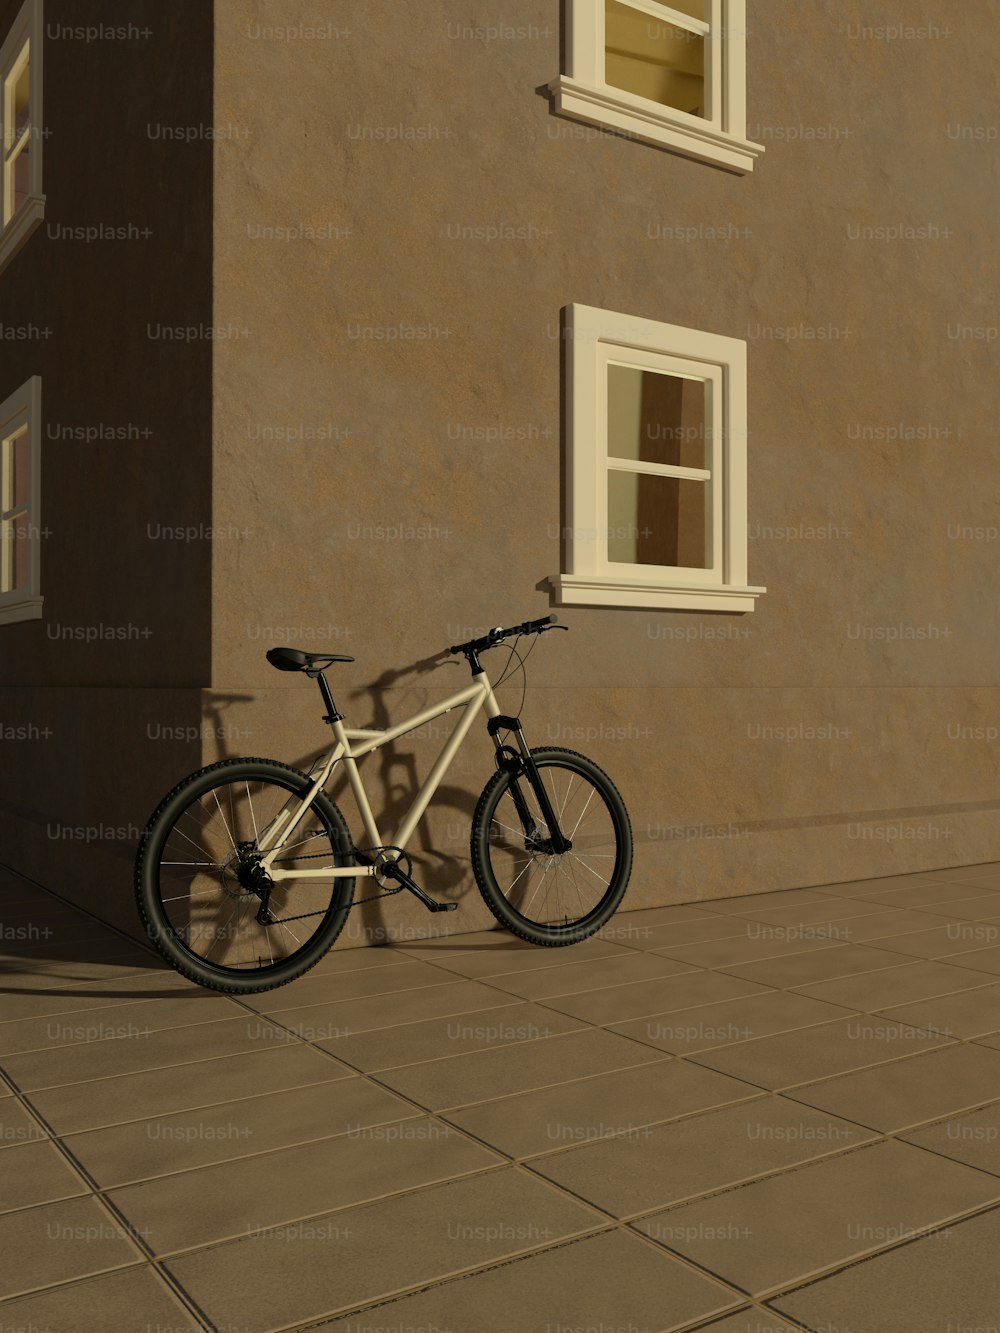 歩道の建物にもたれかかっている自転車